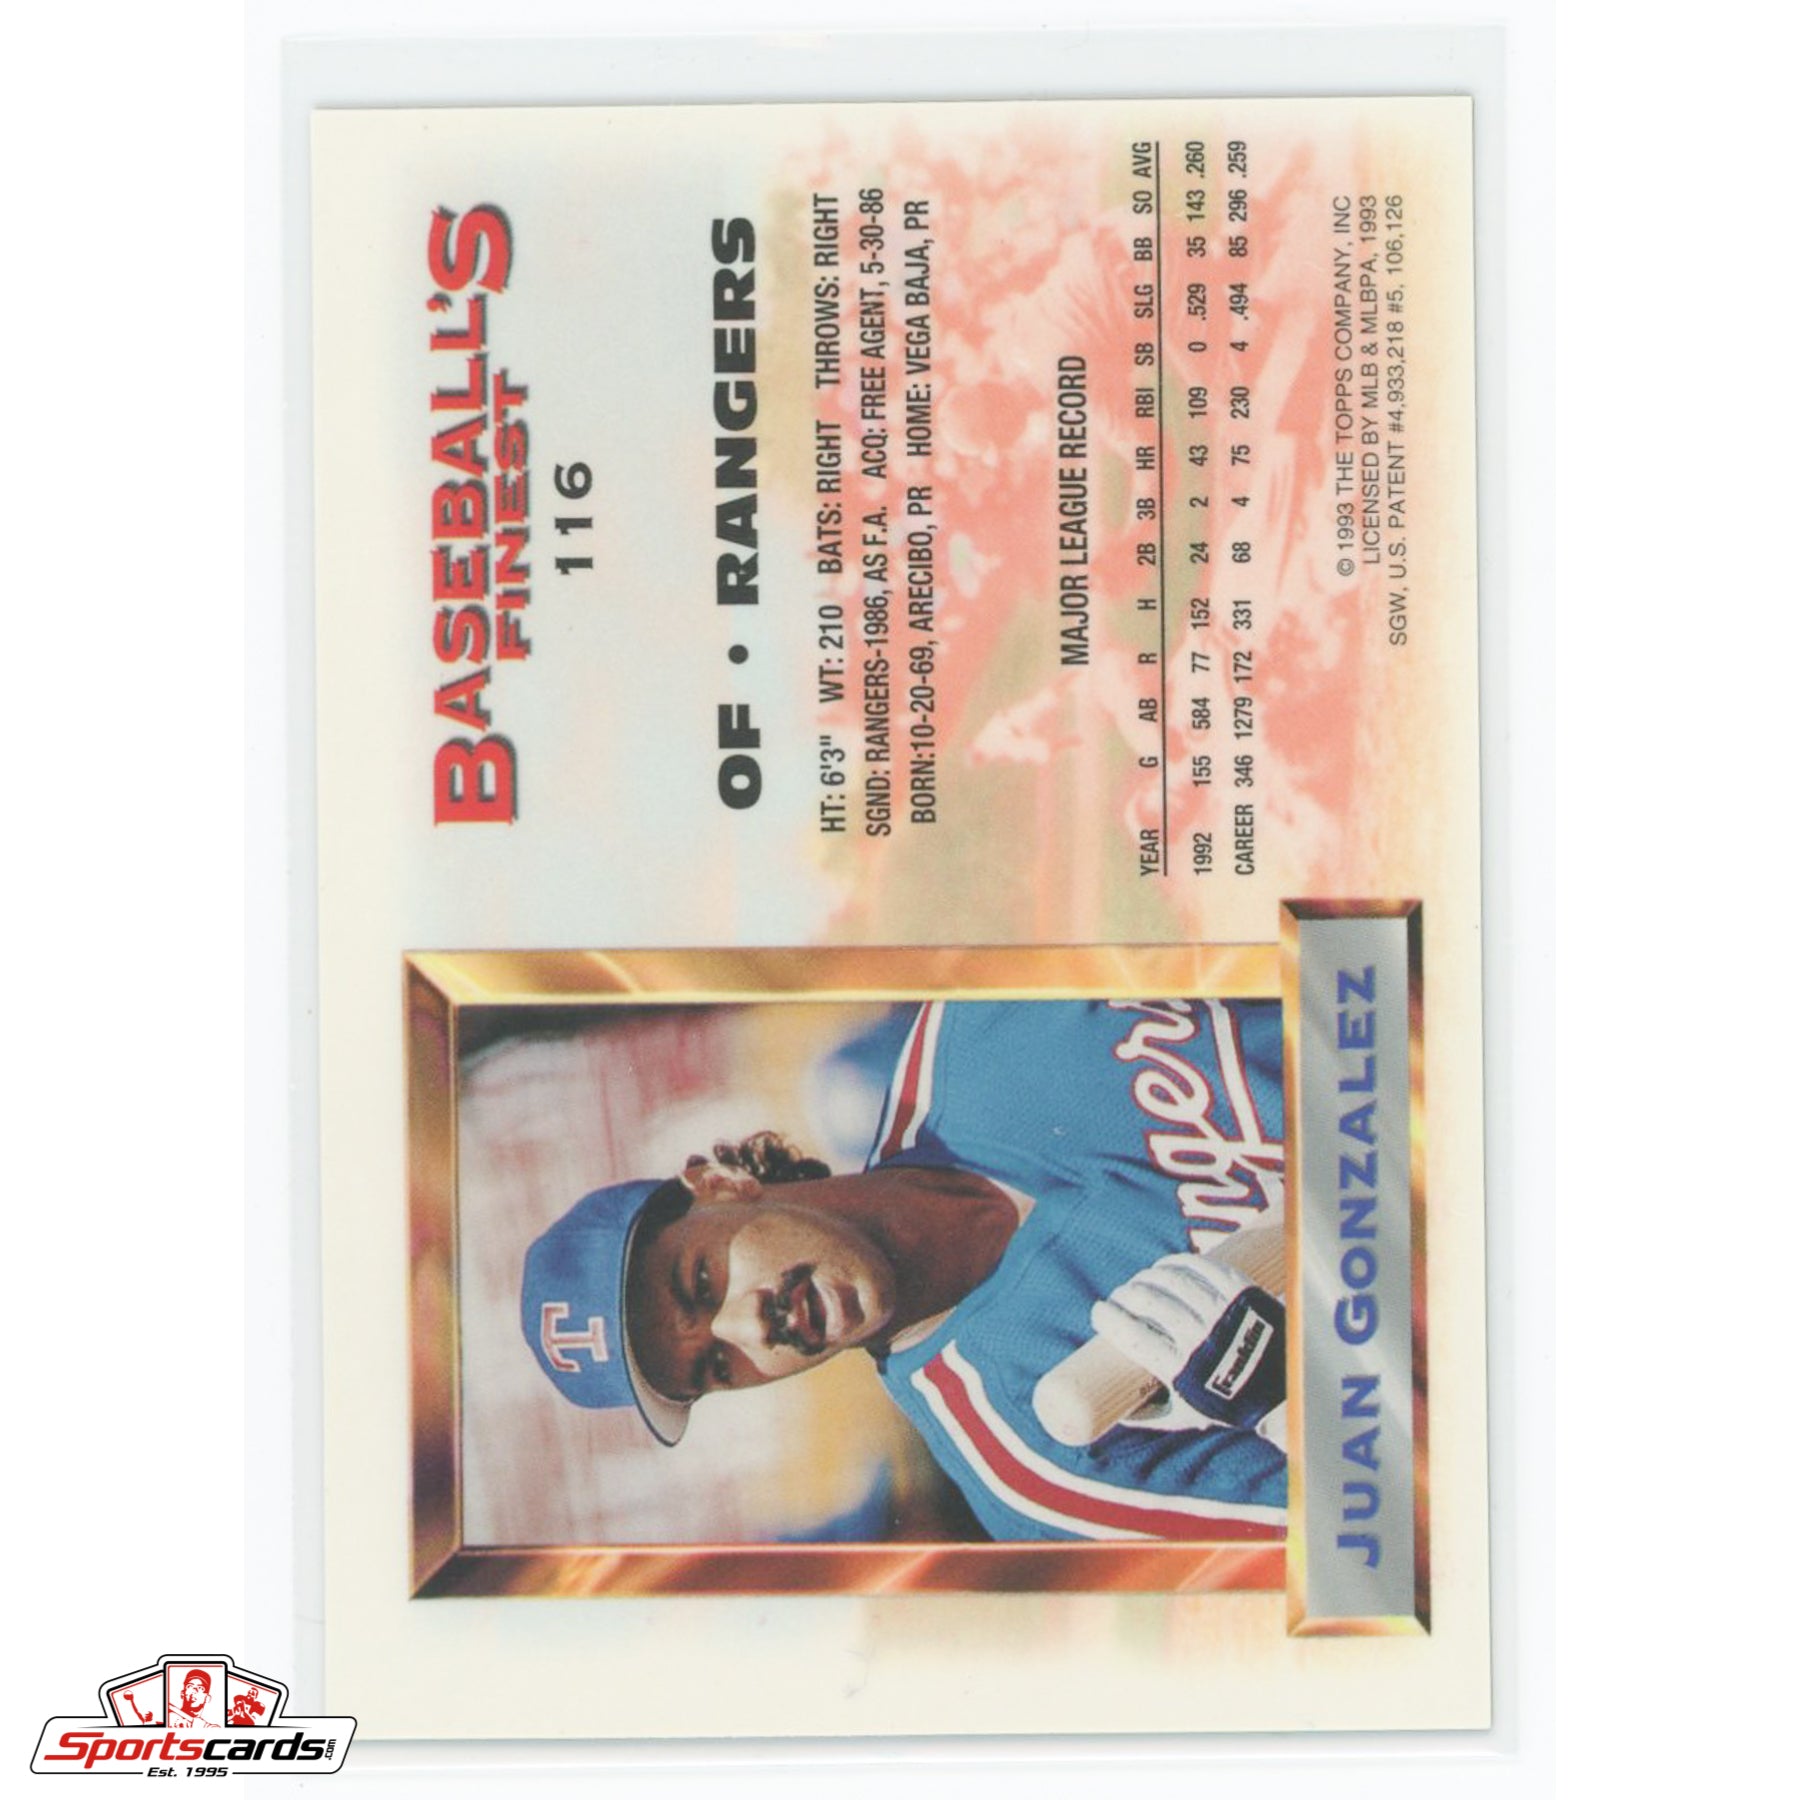 1993 Finest Juan Gonzalez Refractor #116 Texas Rangers